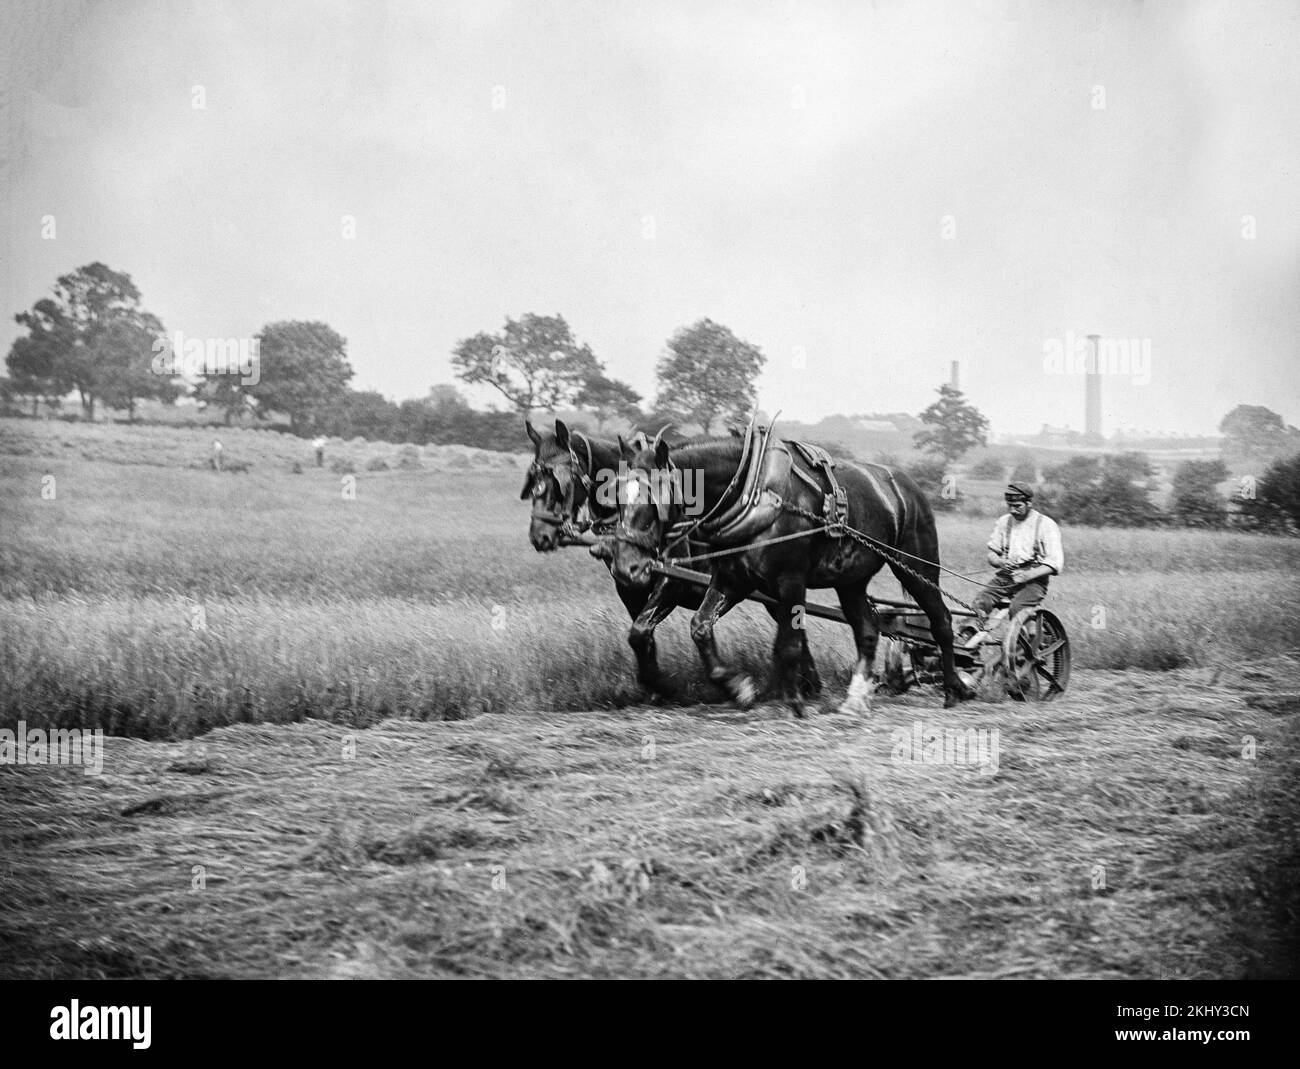 Fotografía inglesa en blanco y negro de finales del siglo 19th que muestra dos grandes caballos de Shire tirando de una máquina de corte de heno de hierba con el agricultor sentado en la parte superior. Foto de stock